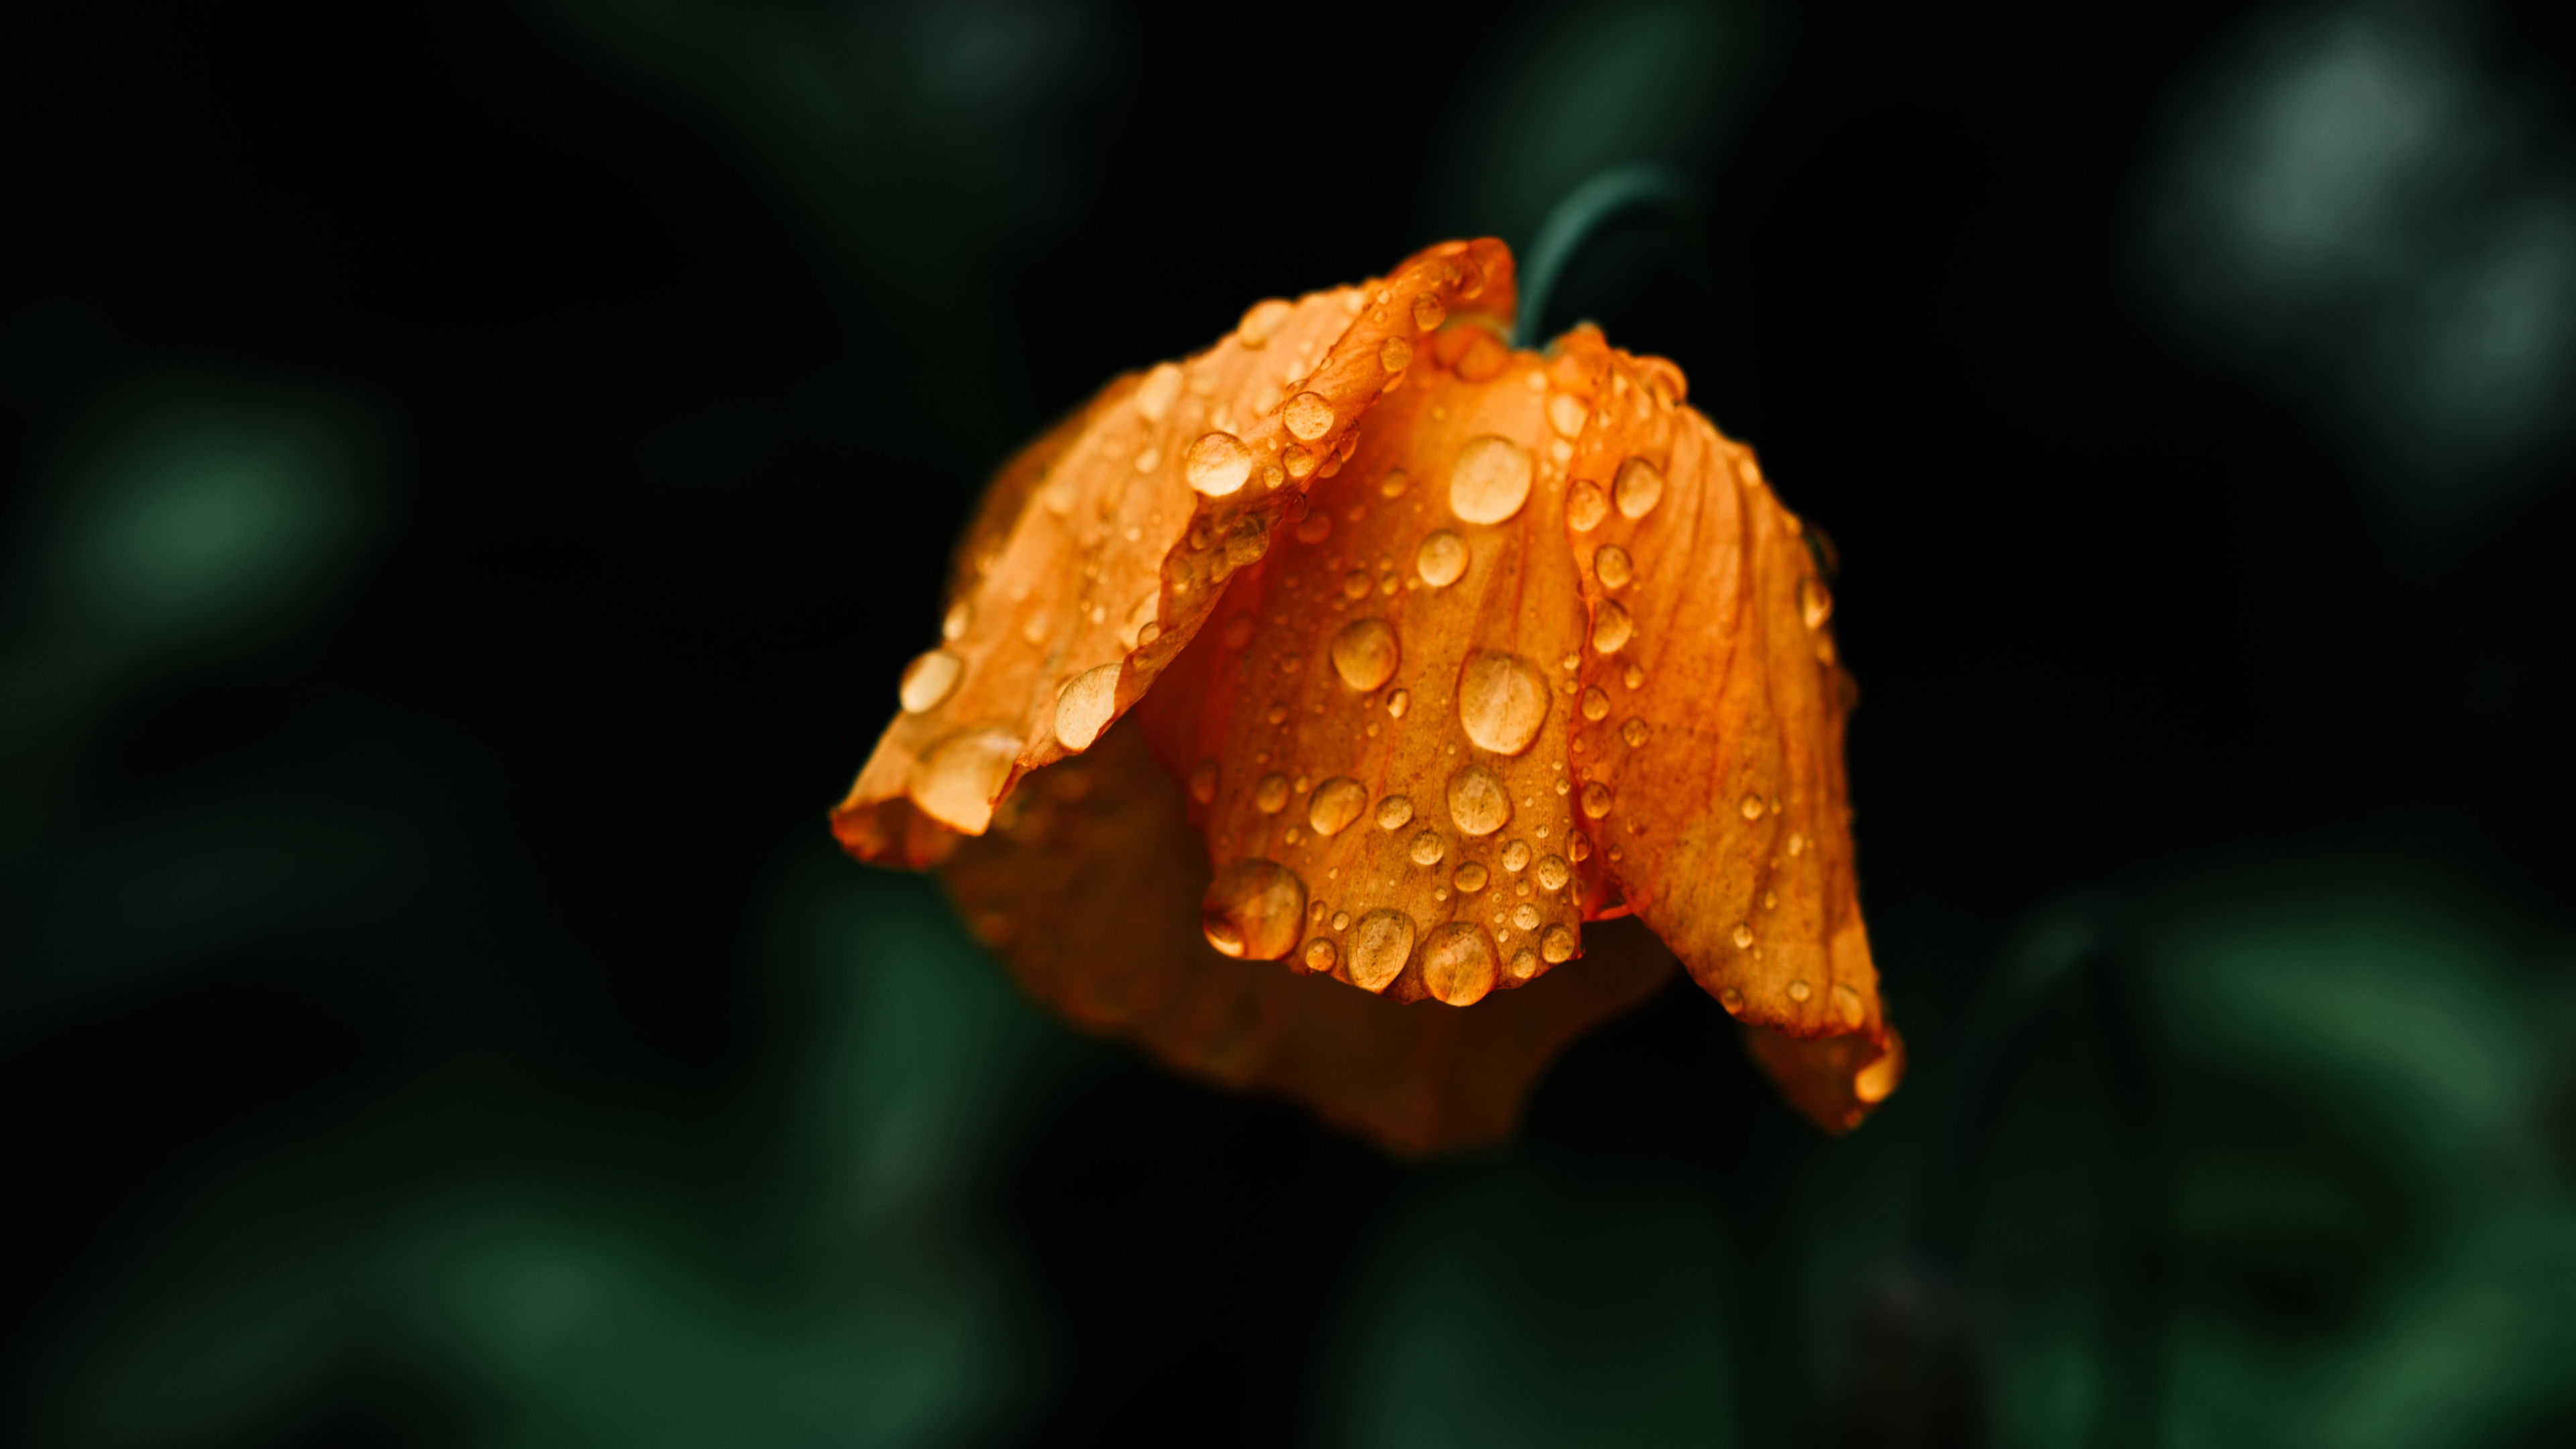 Orange Flower in Tilt Shift Lens. Wallpaper in 3840x2160 Resolution